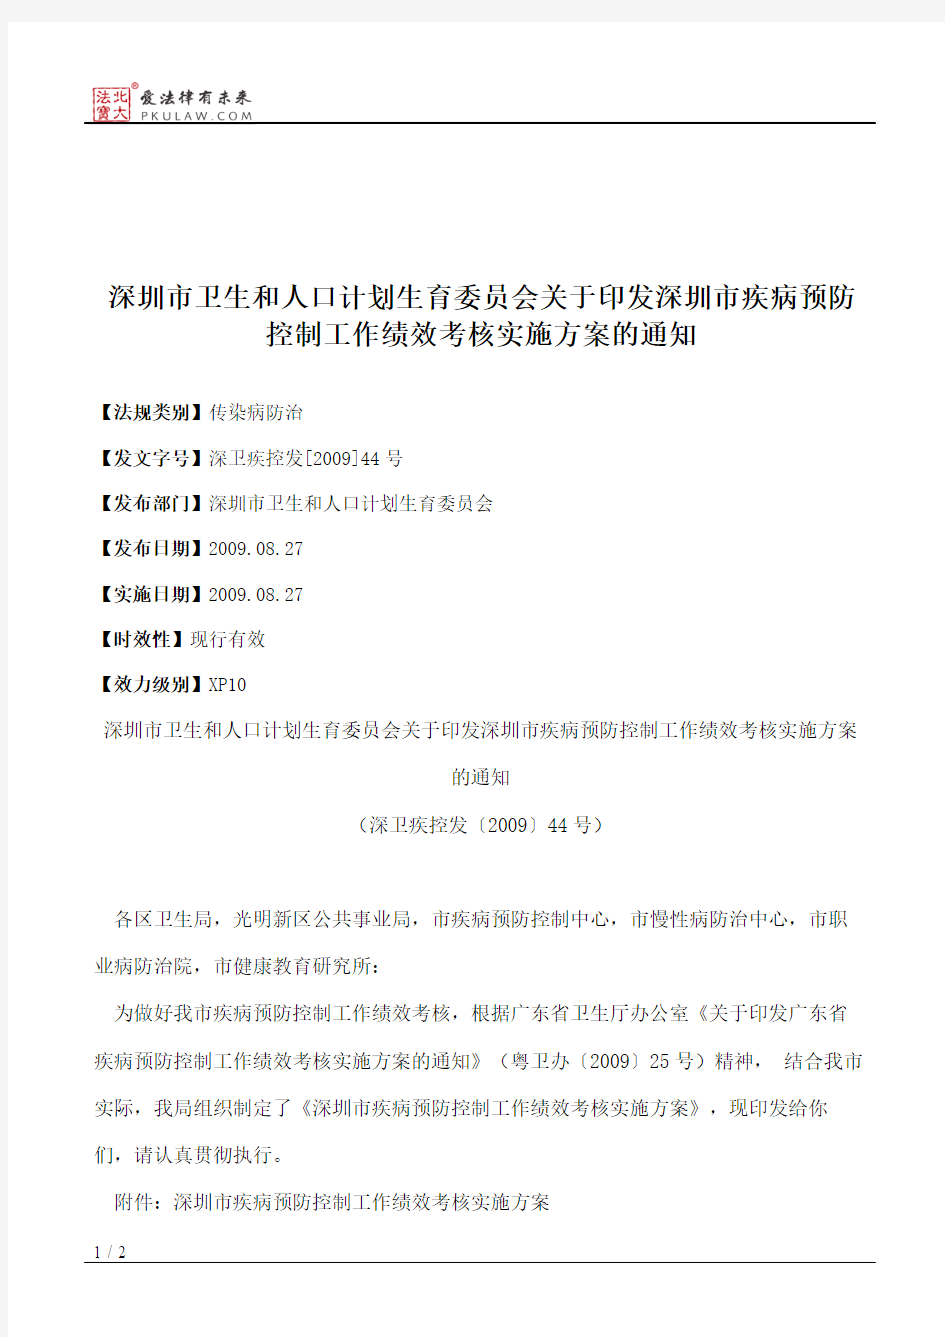 深圳市卫生和人口计划生育委员会关于印发深圳市疾病预防控制工作